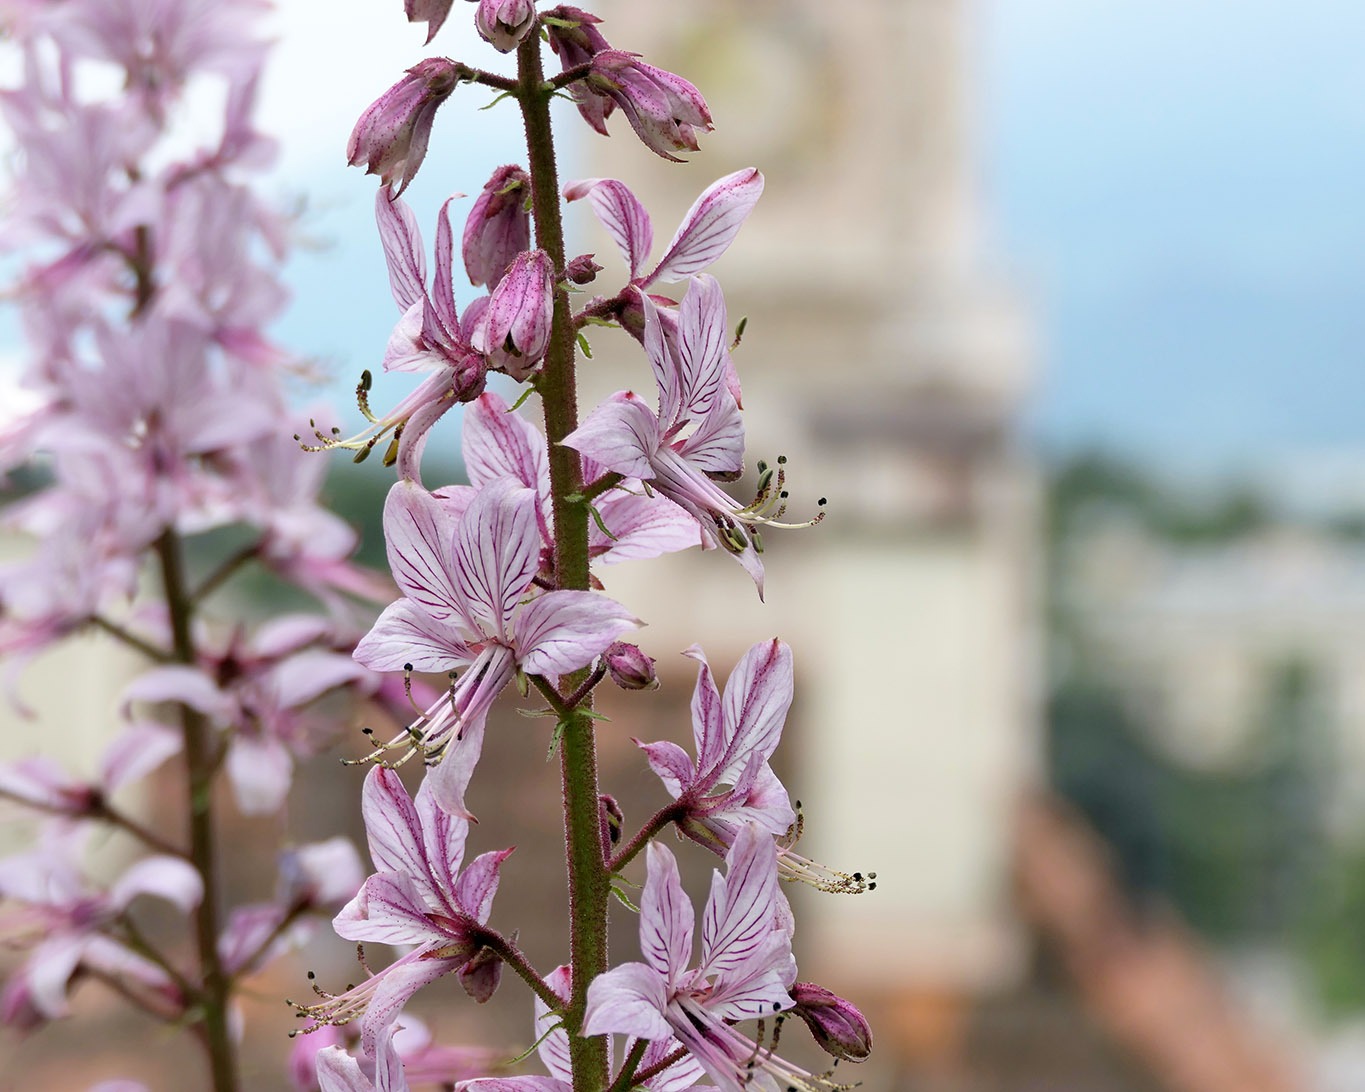 Diptam ist eines der klassichen Schönheiten im Kräutergarten so auch im Orto delle erbe aromatici in Merano.